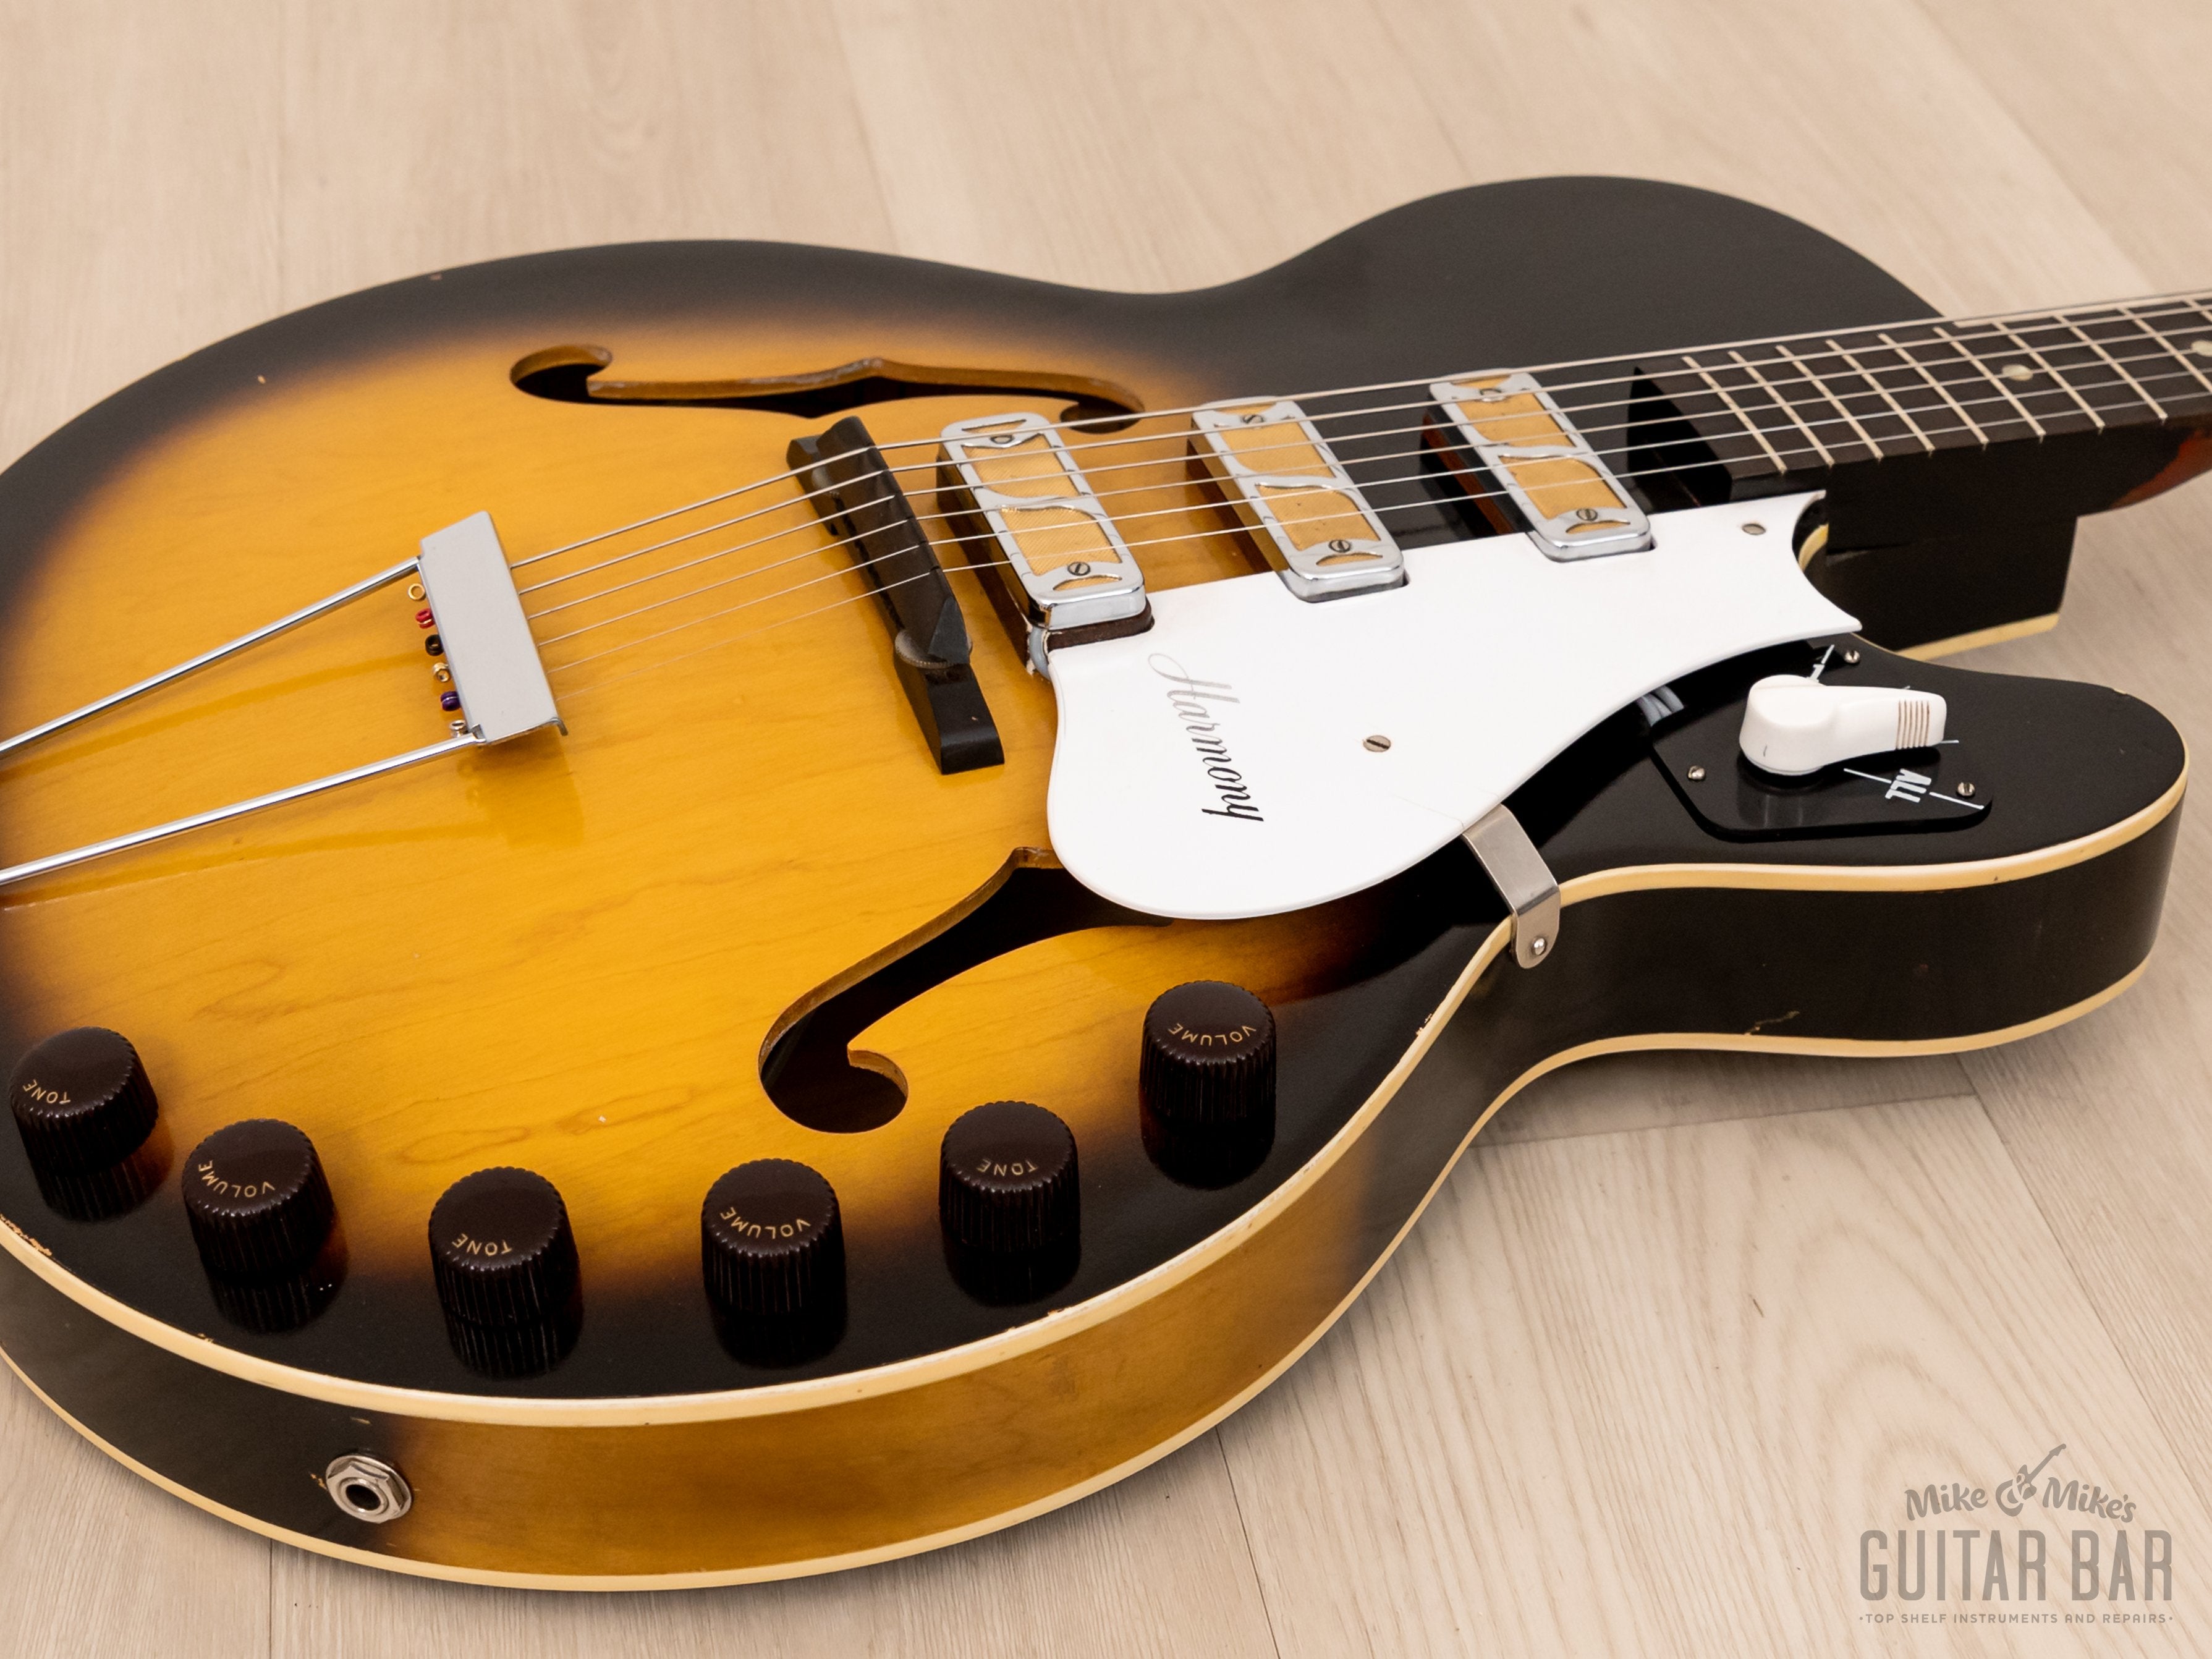 1963 Harmony H59 Rocket Vintage Guitar 100% Original w/ DeArmond Gold Foils, Case